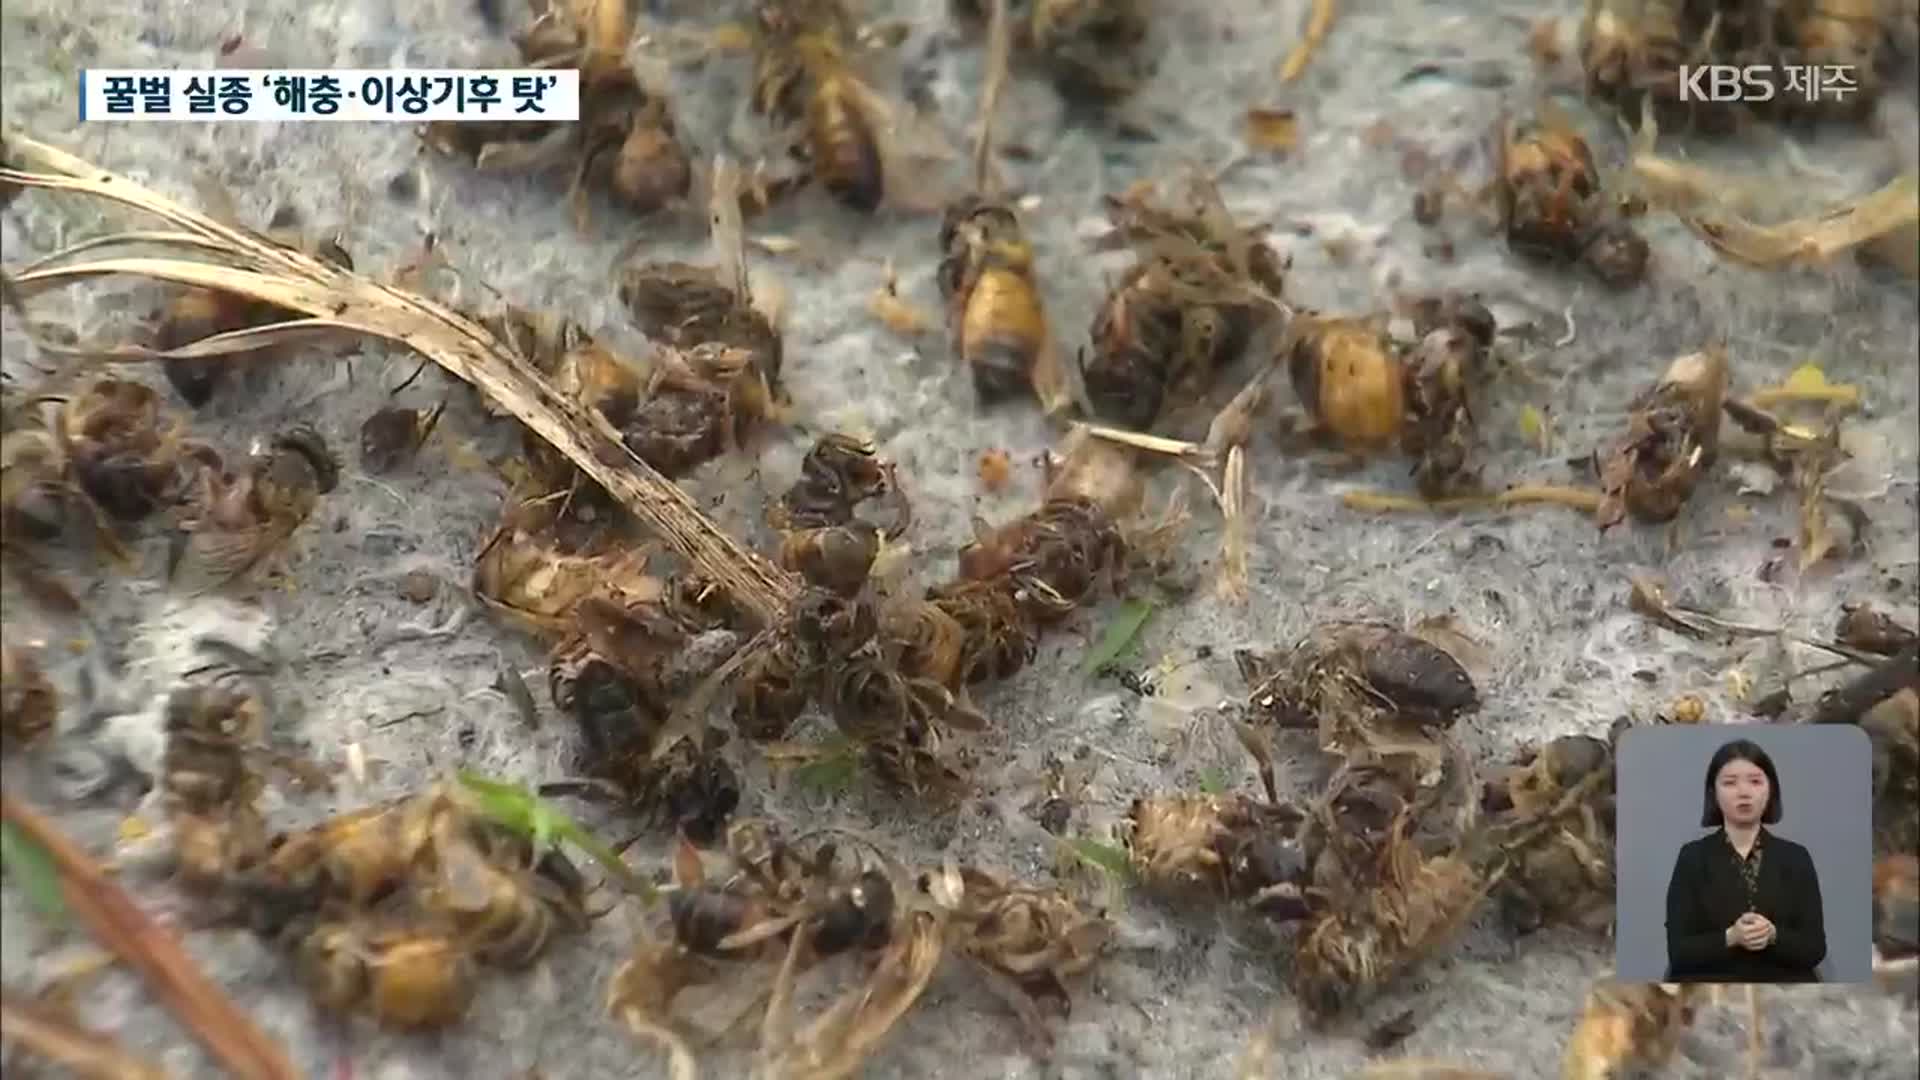 제주 ‘꿀벌 실종’ 사태…원인은 해충과 이상 기후